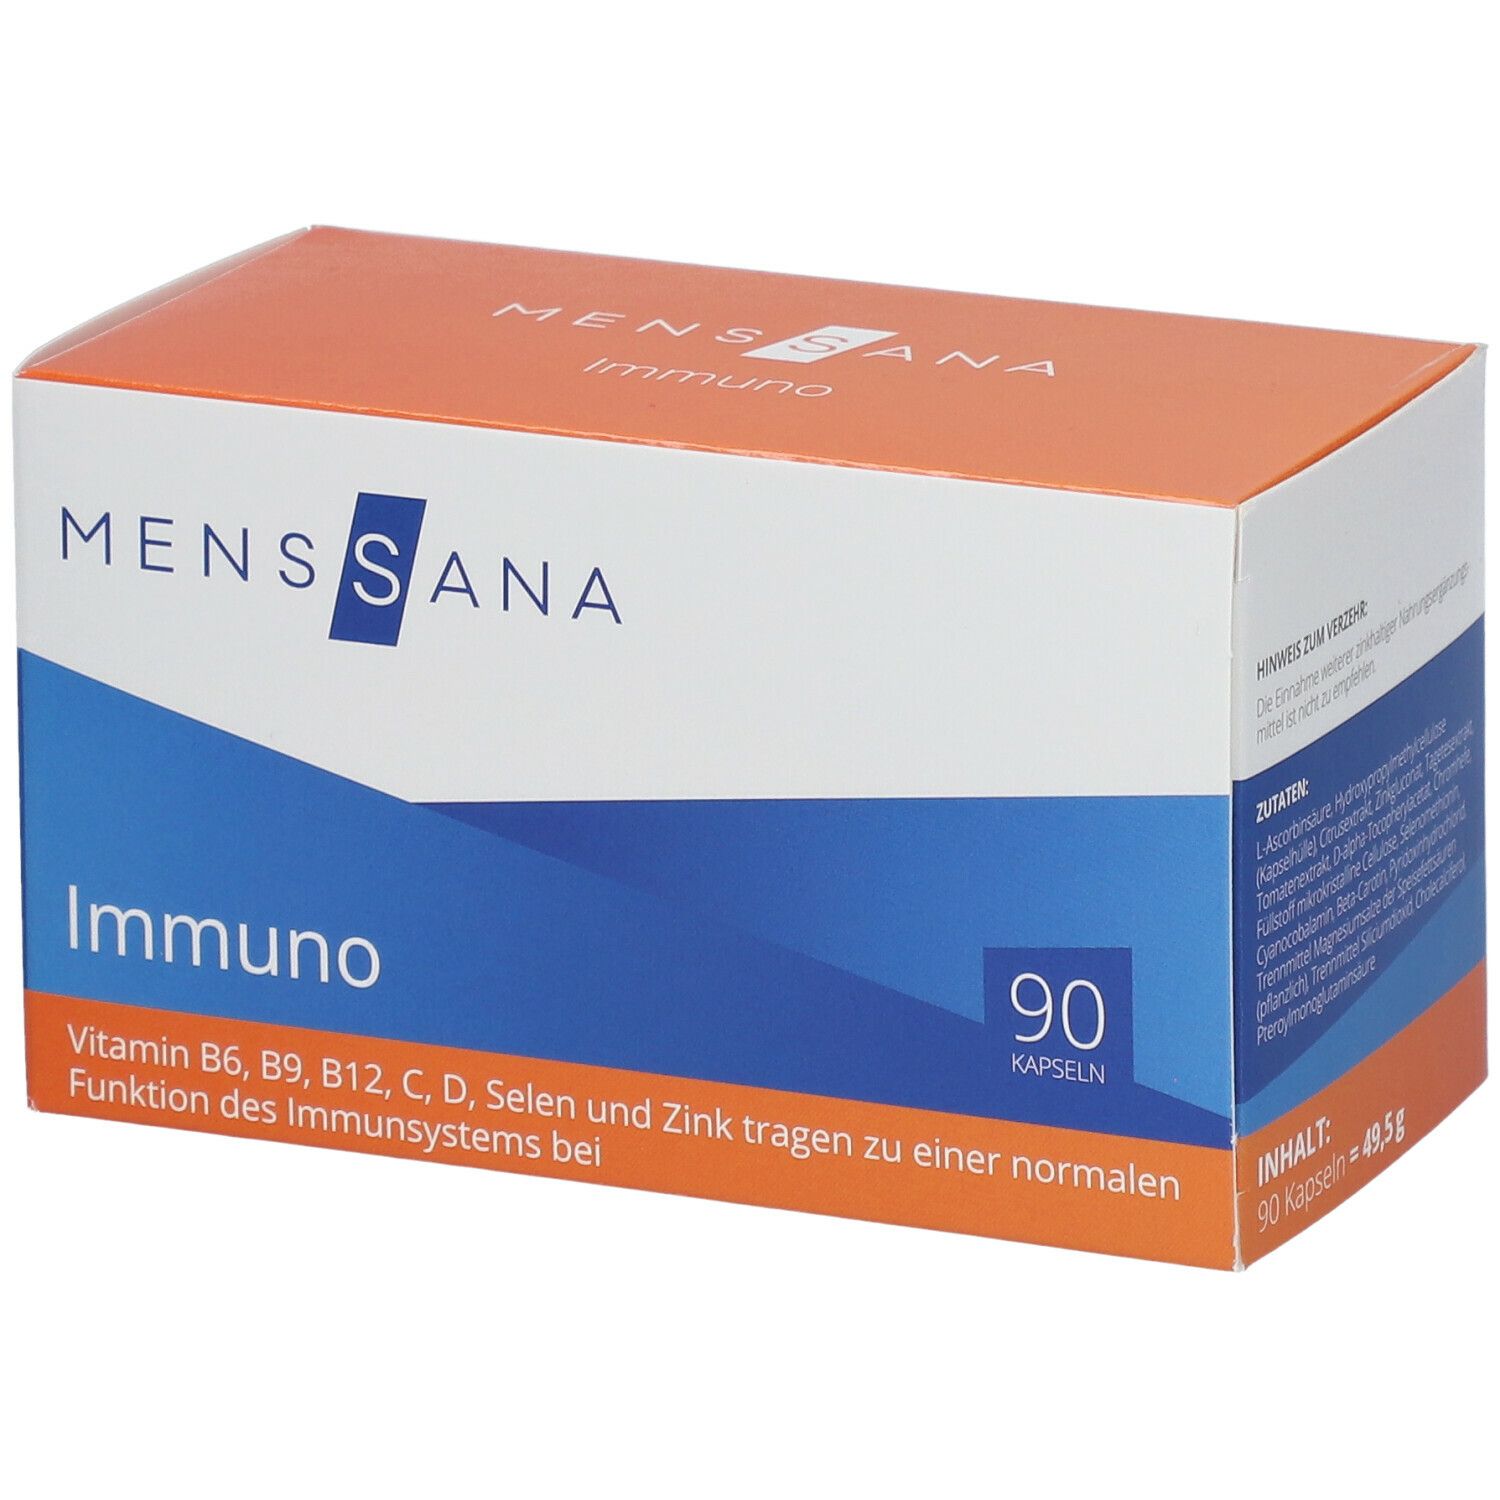 MensSana Immuno